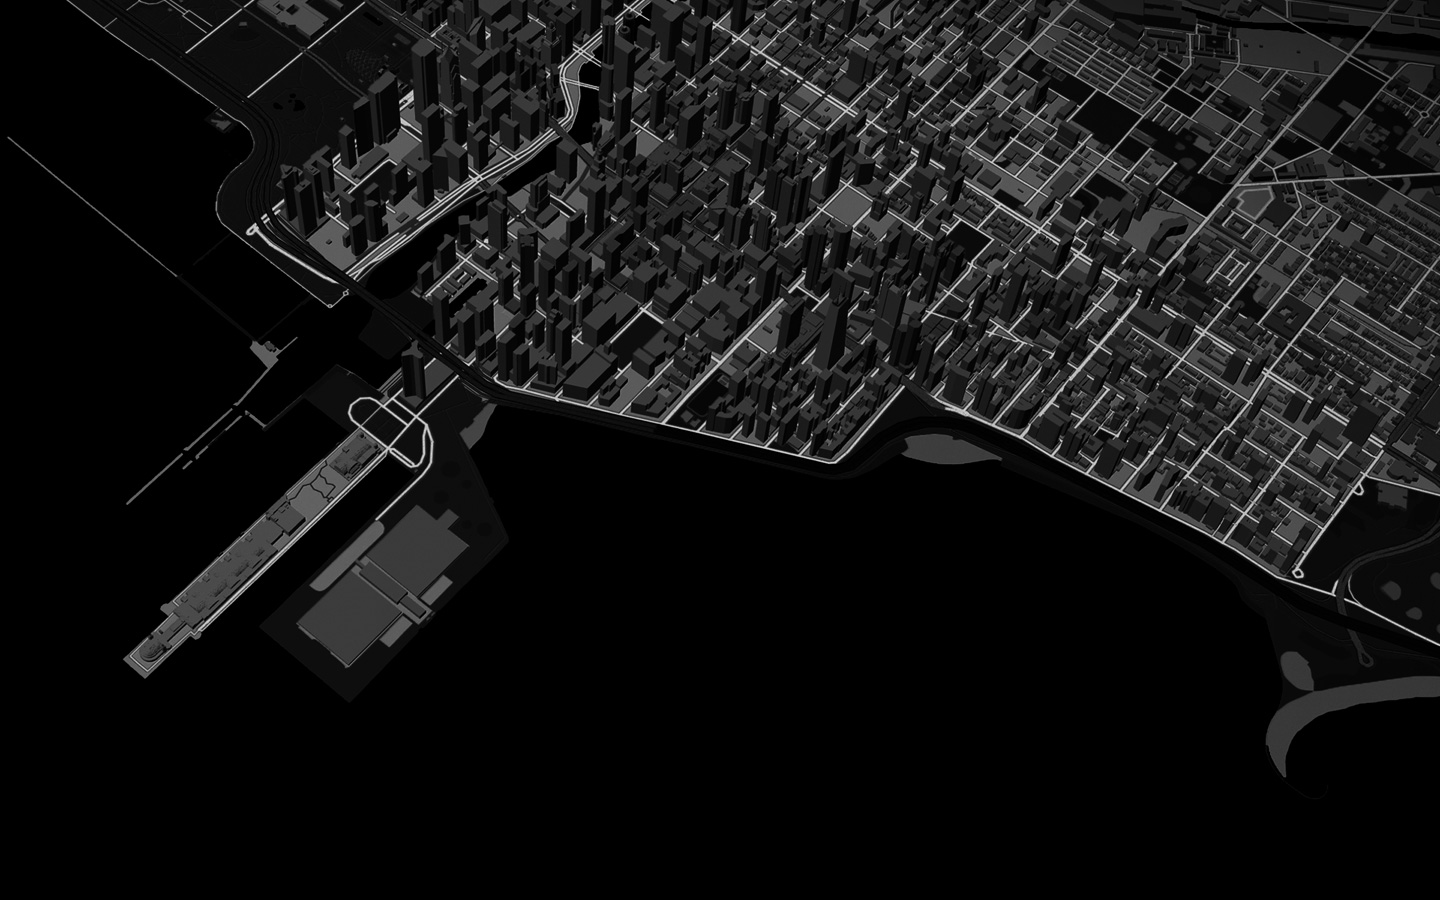 Animație a unei linii reprezentând un traseu de alergare printr-o vedere 3D Maps a unui peisaj urban